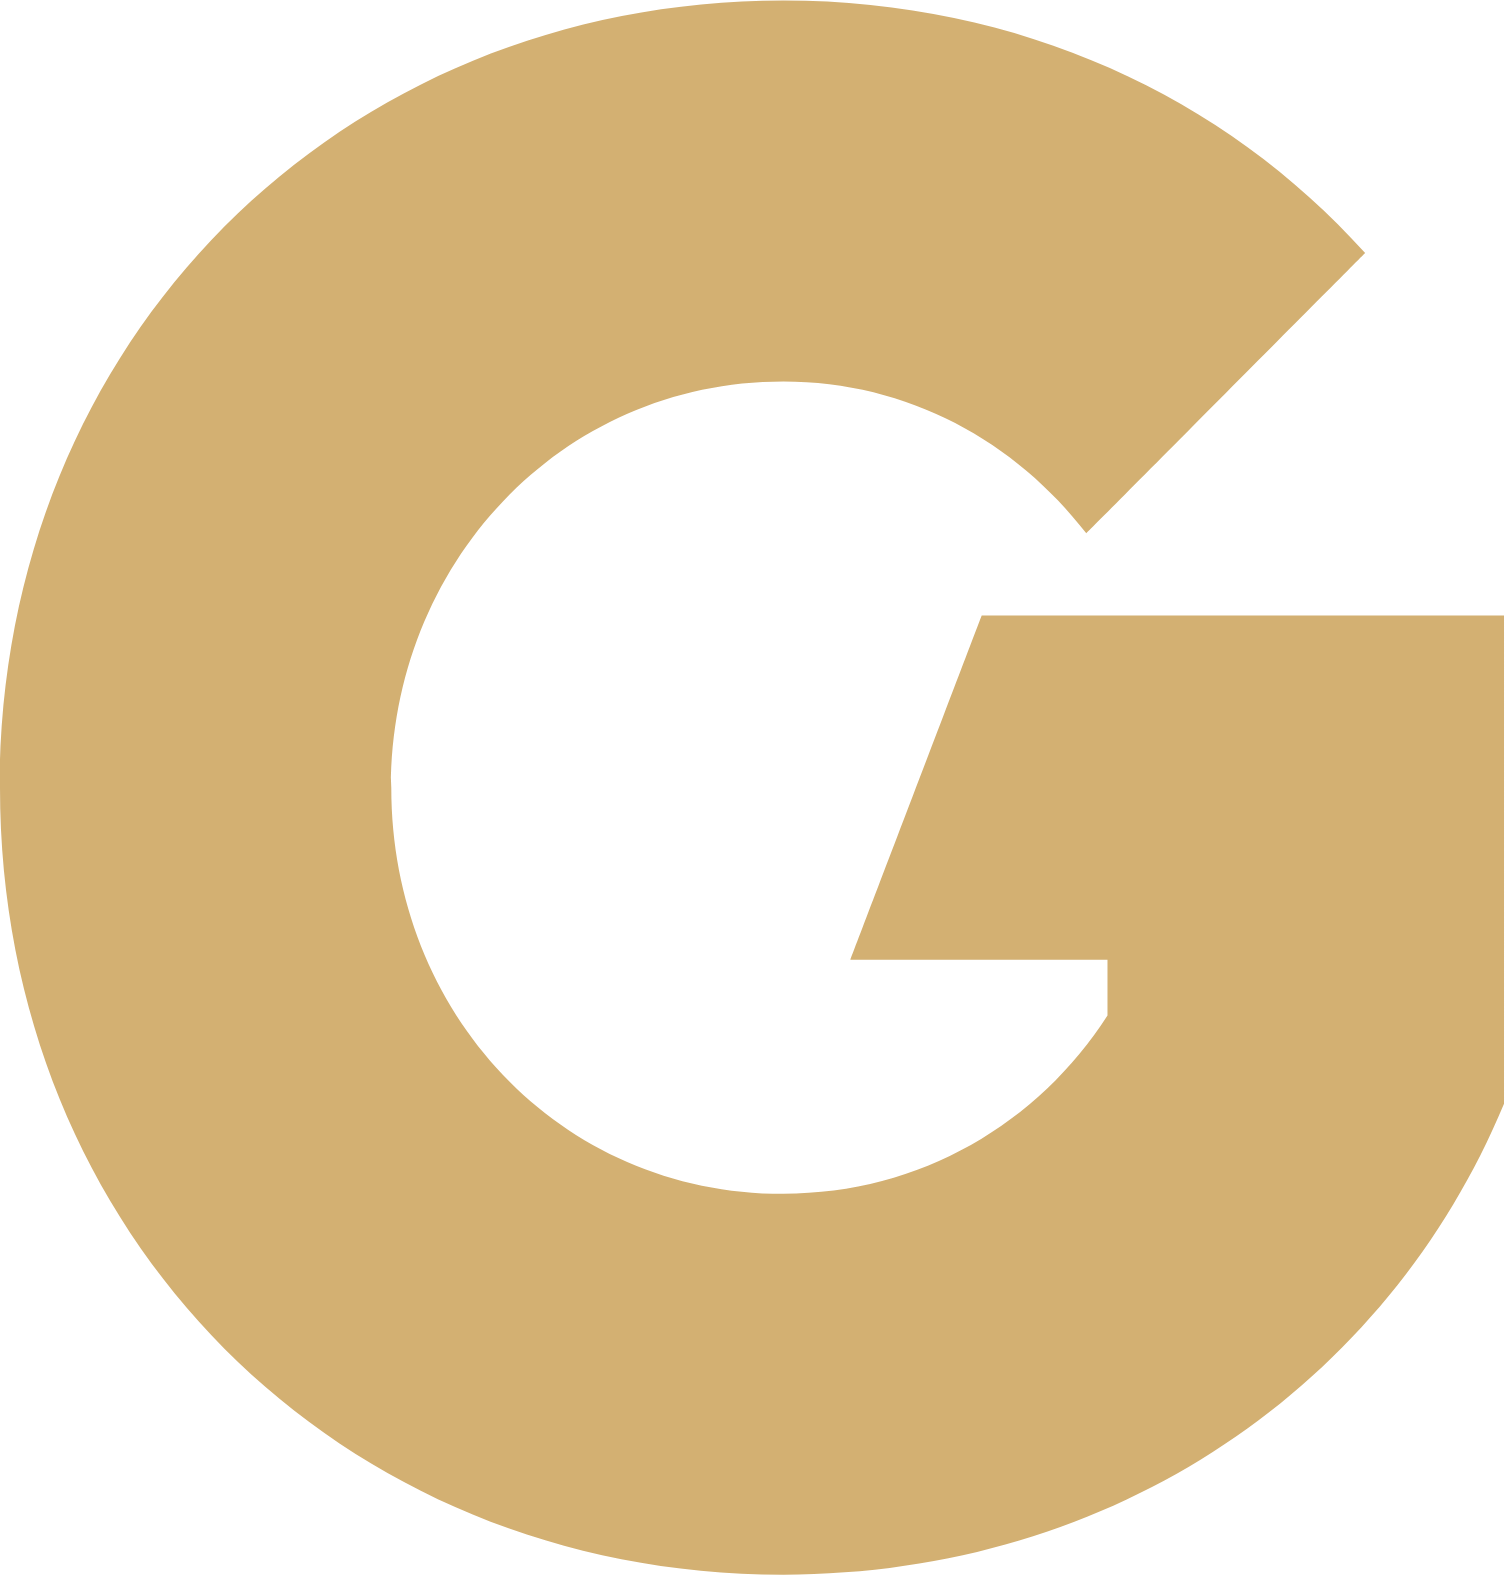 GoldMining Inc. logo (PNG transparent)